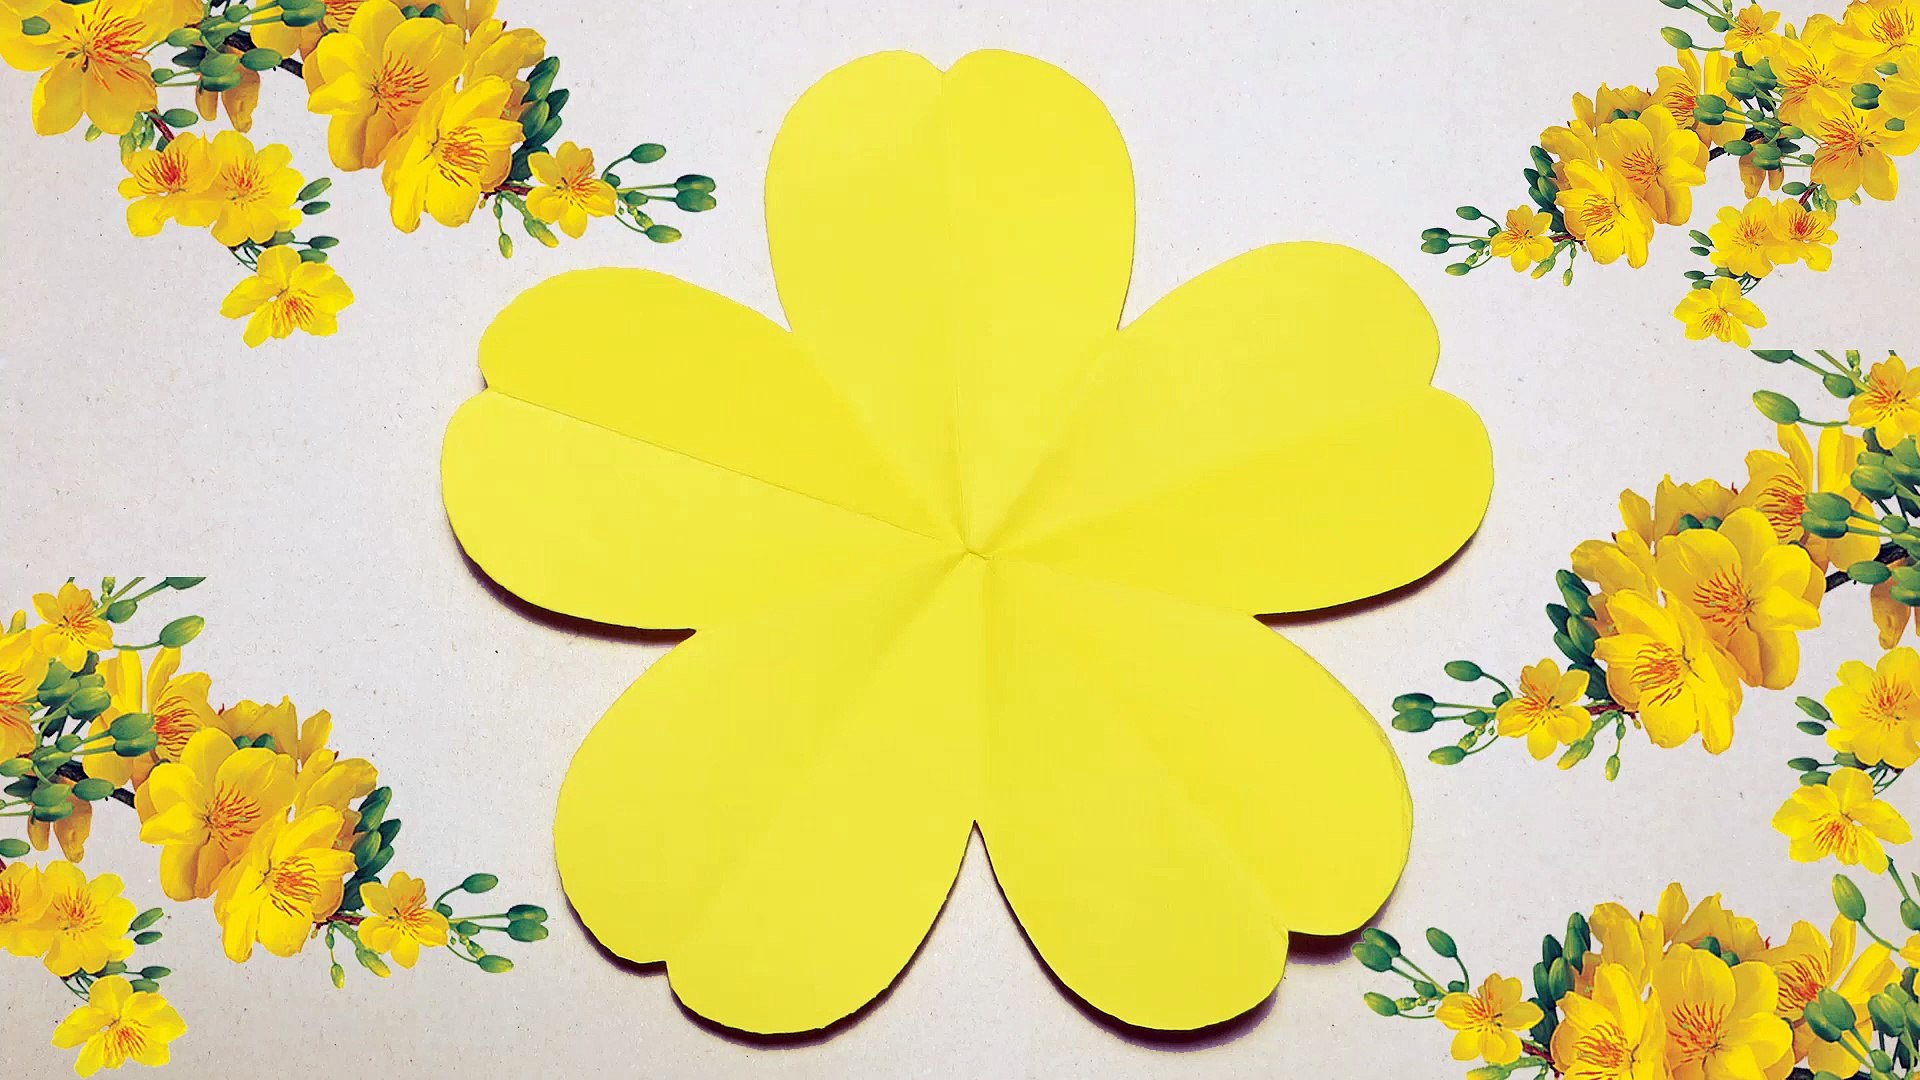 Bạn muốn tạo ra một bông hoa vàng xinh đẹp từ giấy? Hãy tham khảo bài hướng dẫn về cách gấp bông hoa 5 cánh và sáng tạo theo ý tưởng và màu sắc của bạn. Đừng bỏ lỡ cơ hội để thể hiện tài năng và khả năng của mình.